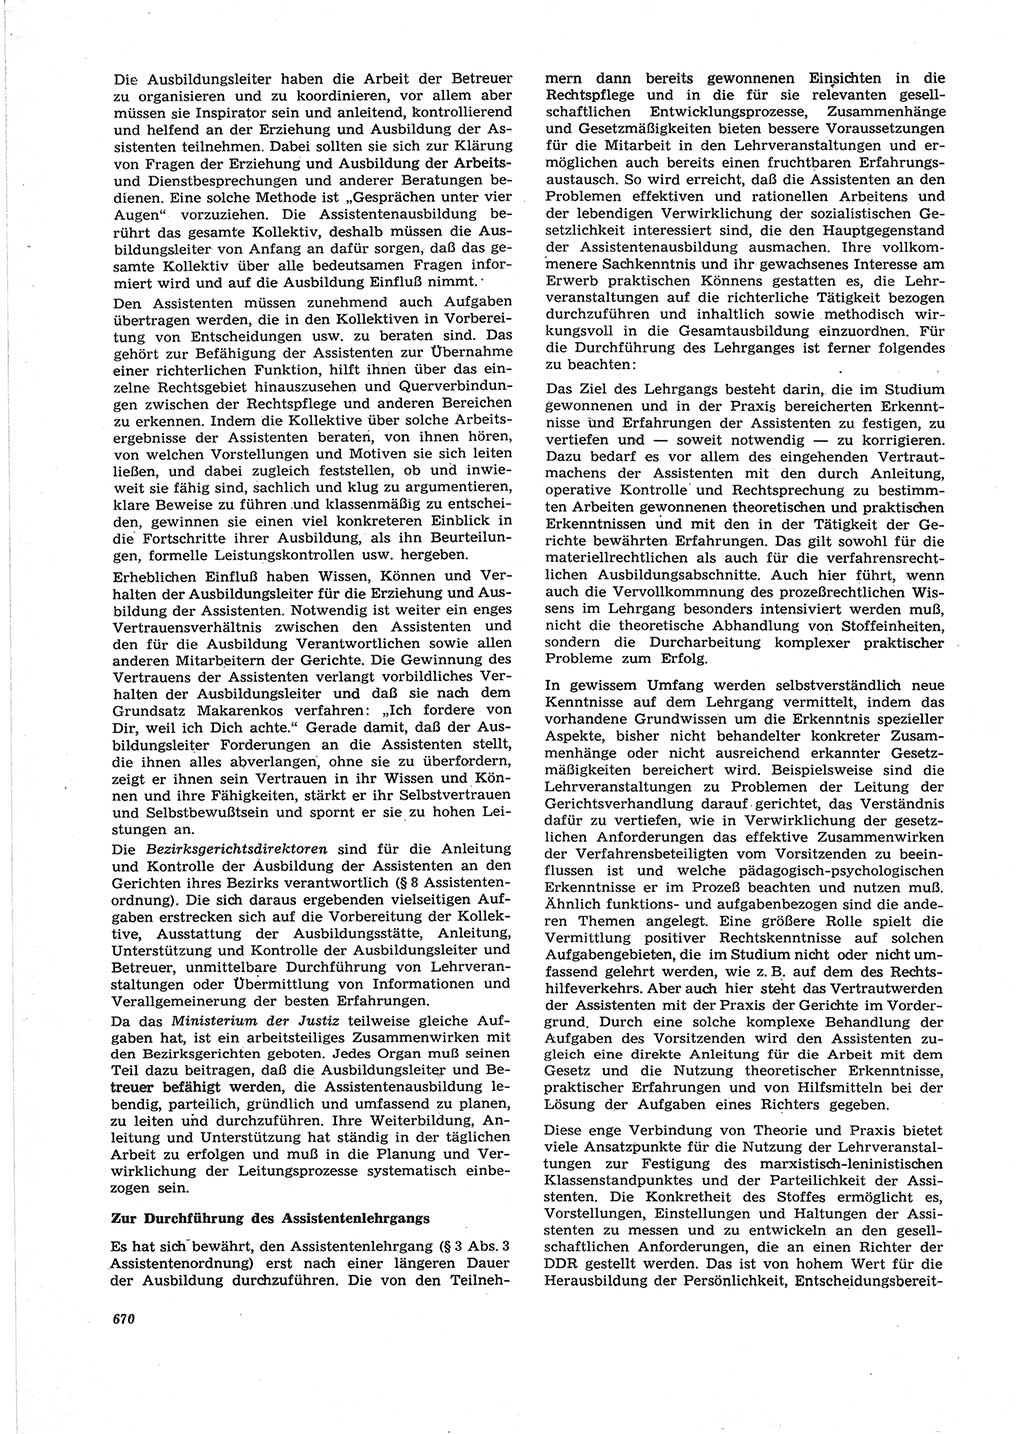 Neue Justiz (NJ), Zeitschrift für Recht und Rechtswissenschaft [Deutsche Demokratische Republik (DDR)], 25. Jahrgang 1971, Seite 670 (NJ DDR 1971, S. 670)